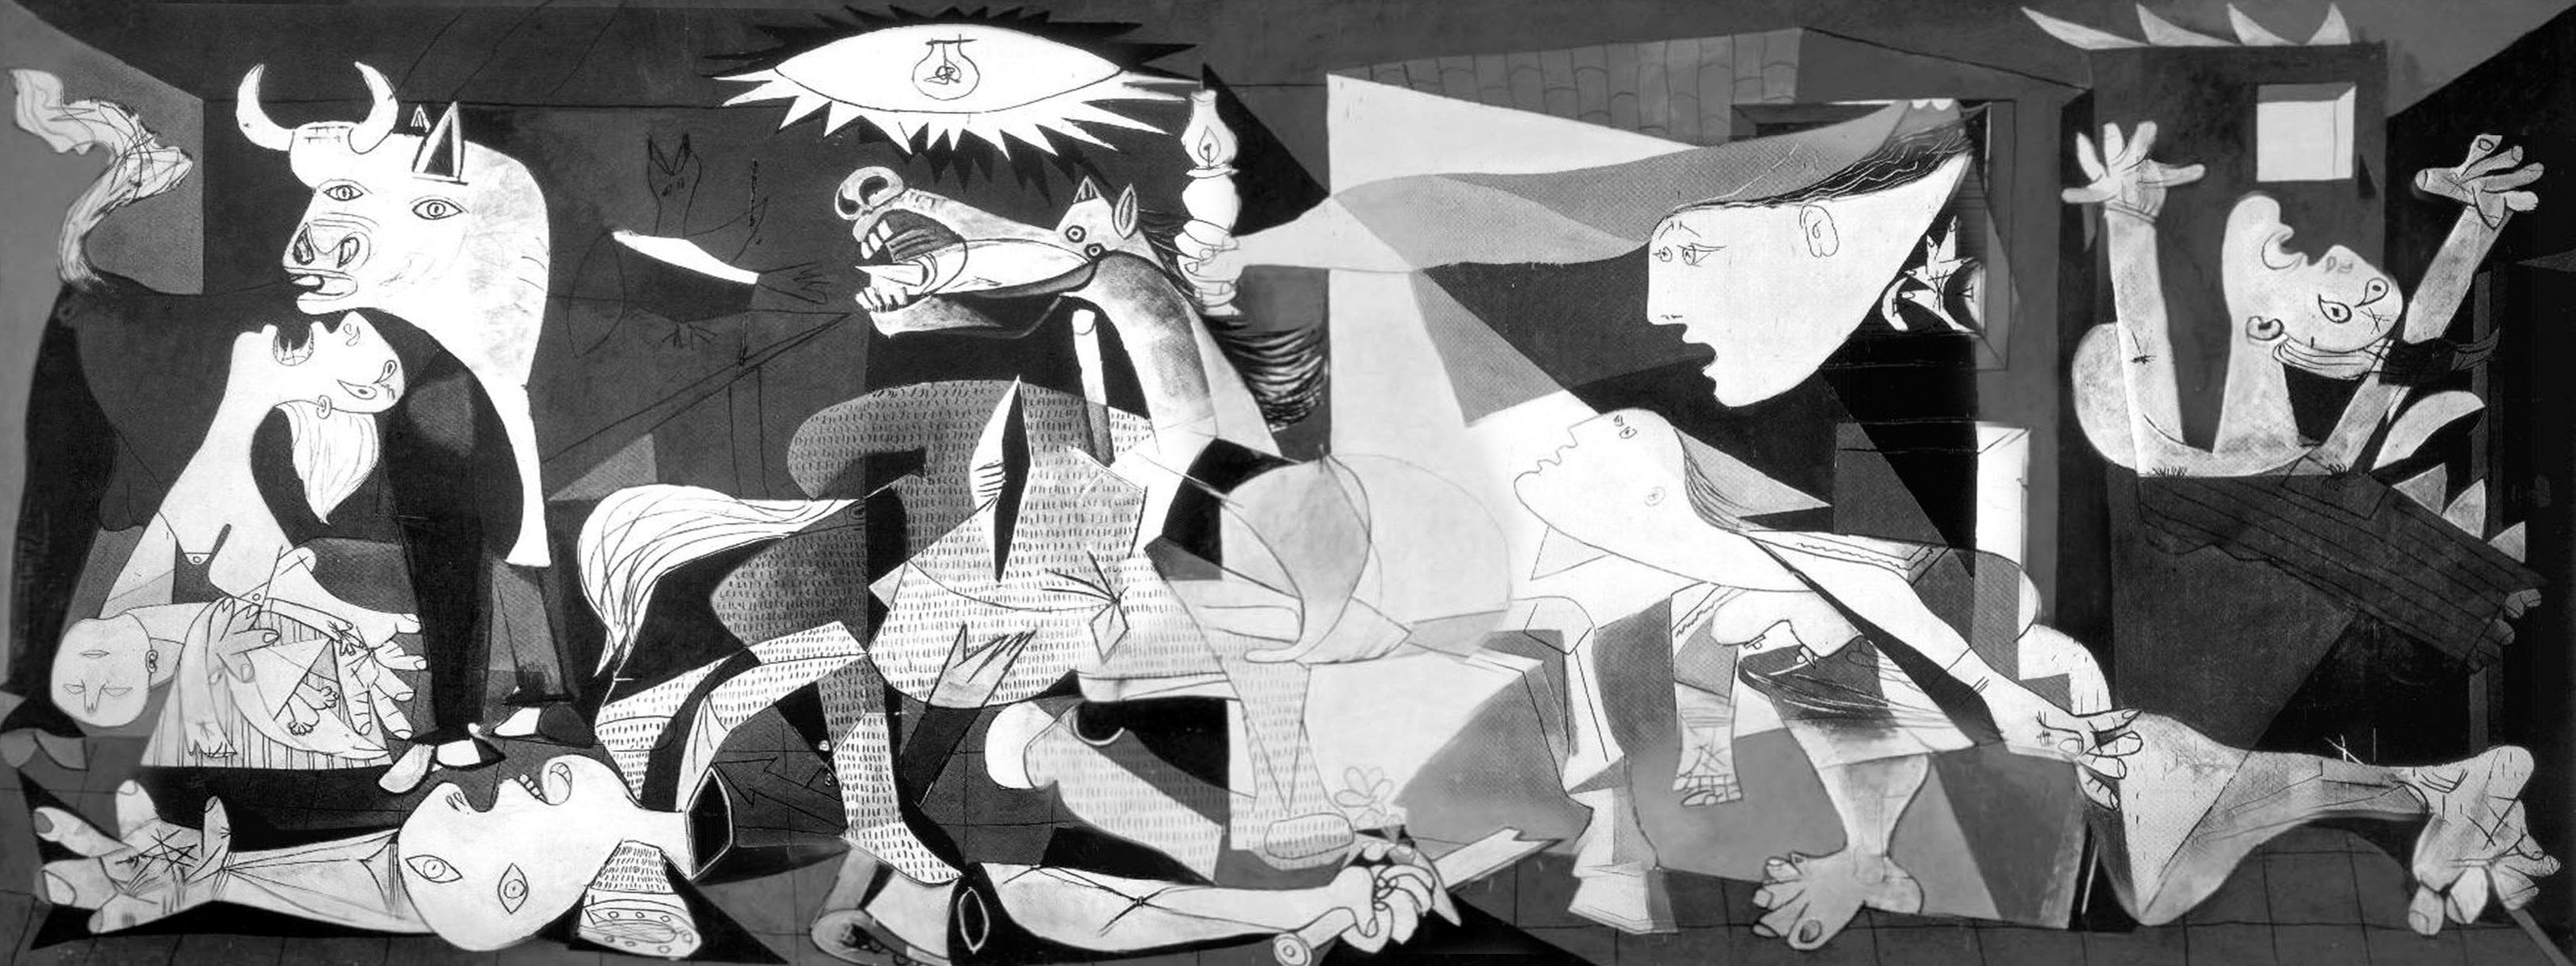 “Guernica”, Pablo Picasso, 1937. Une reconstitution virtuelle en très haute définition célèbre les 80 ans de l'œuvre au musée Reina Sofia de Madrid.